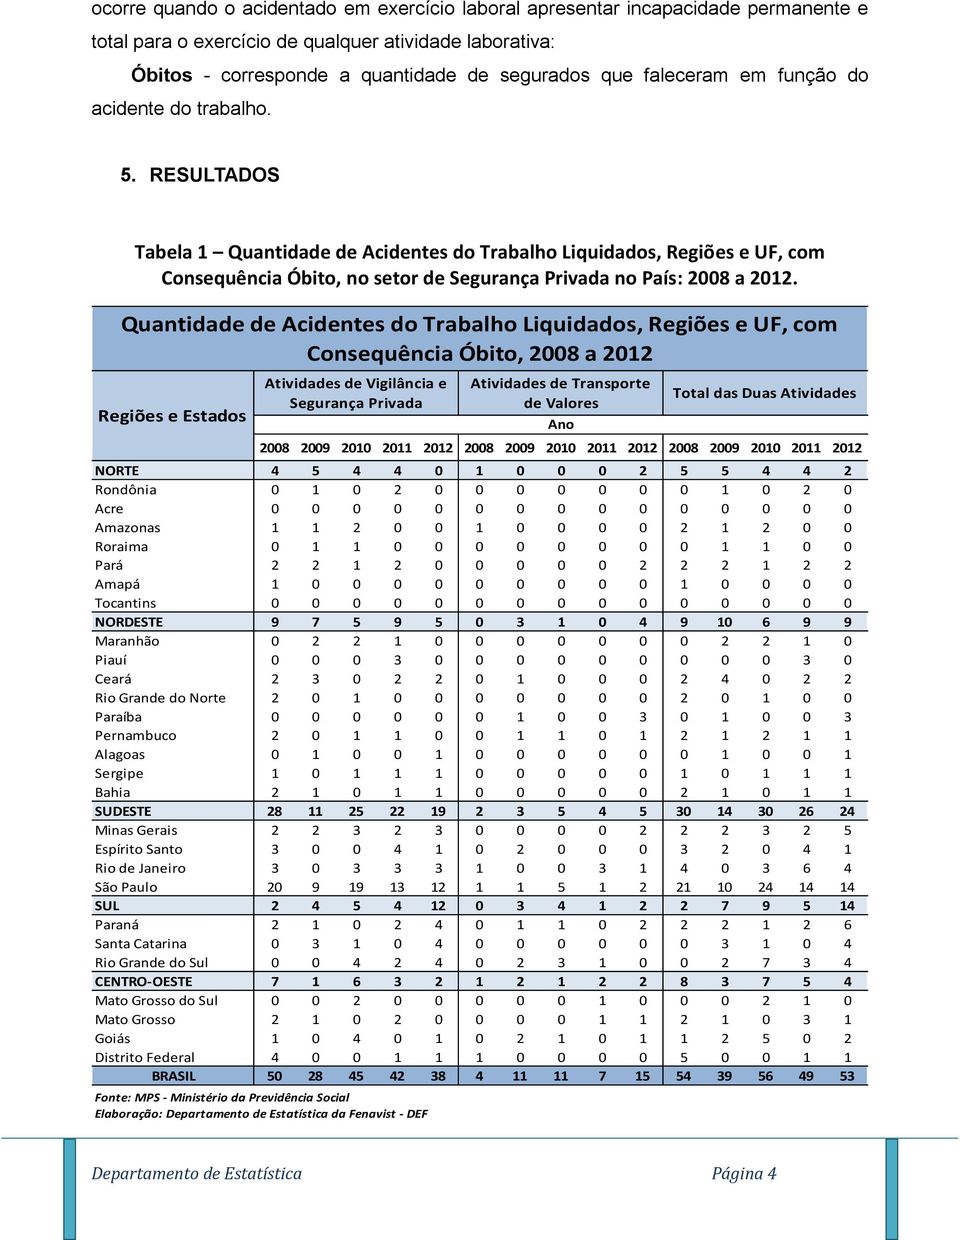 RESULTADOS Tabela 1 Quantidade de Acidentes do Trabalho Liquidados, Regiões e UF, com Consequência Óbito, no setor de Segurança Privada no País: 2008 a 2012.